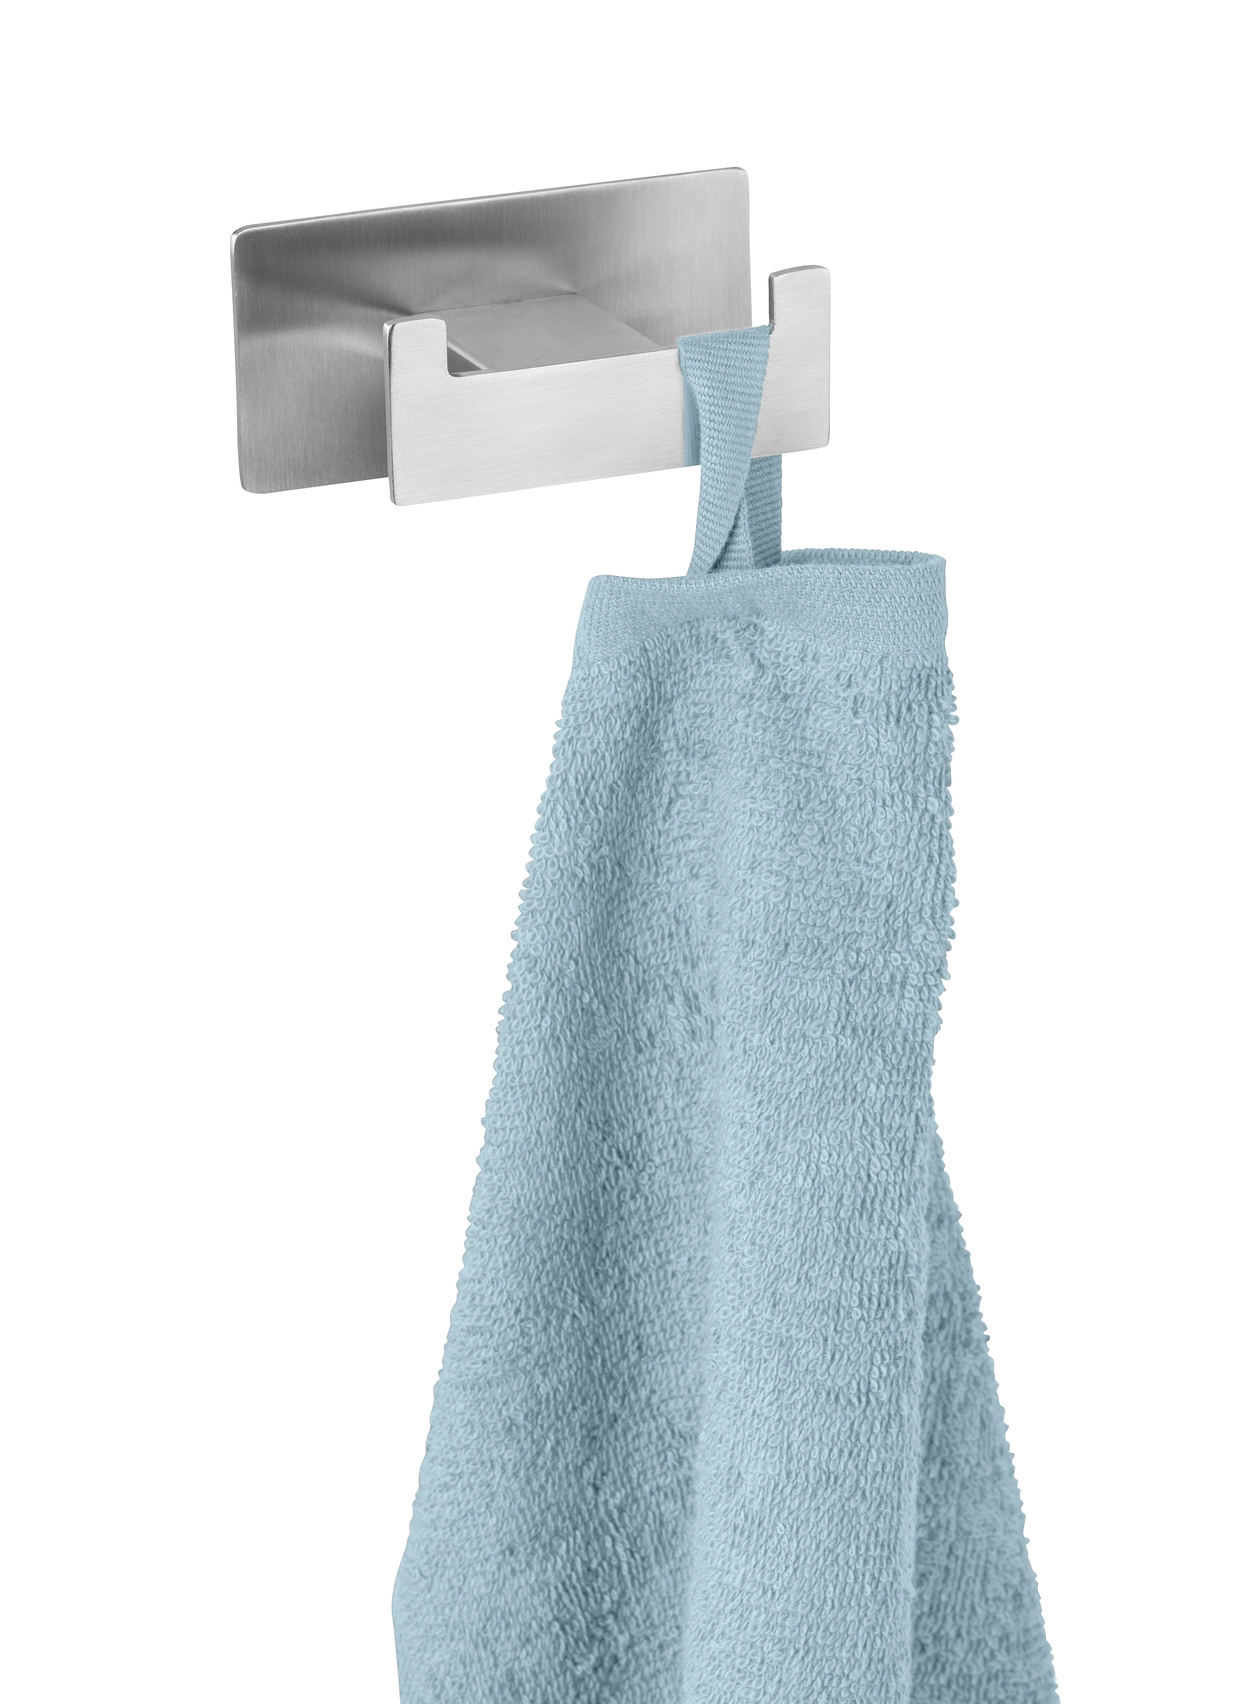 | | GENOVA | Wandhaken und Handtuchhalter | bei | Badezimmer Räume günstig Polstermöbel Badaccessoires online kaufen TURBO-LOC®